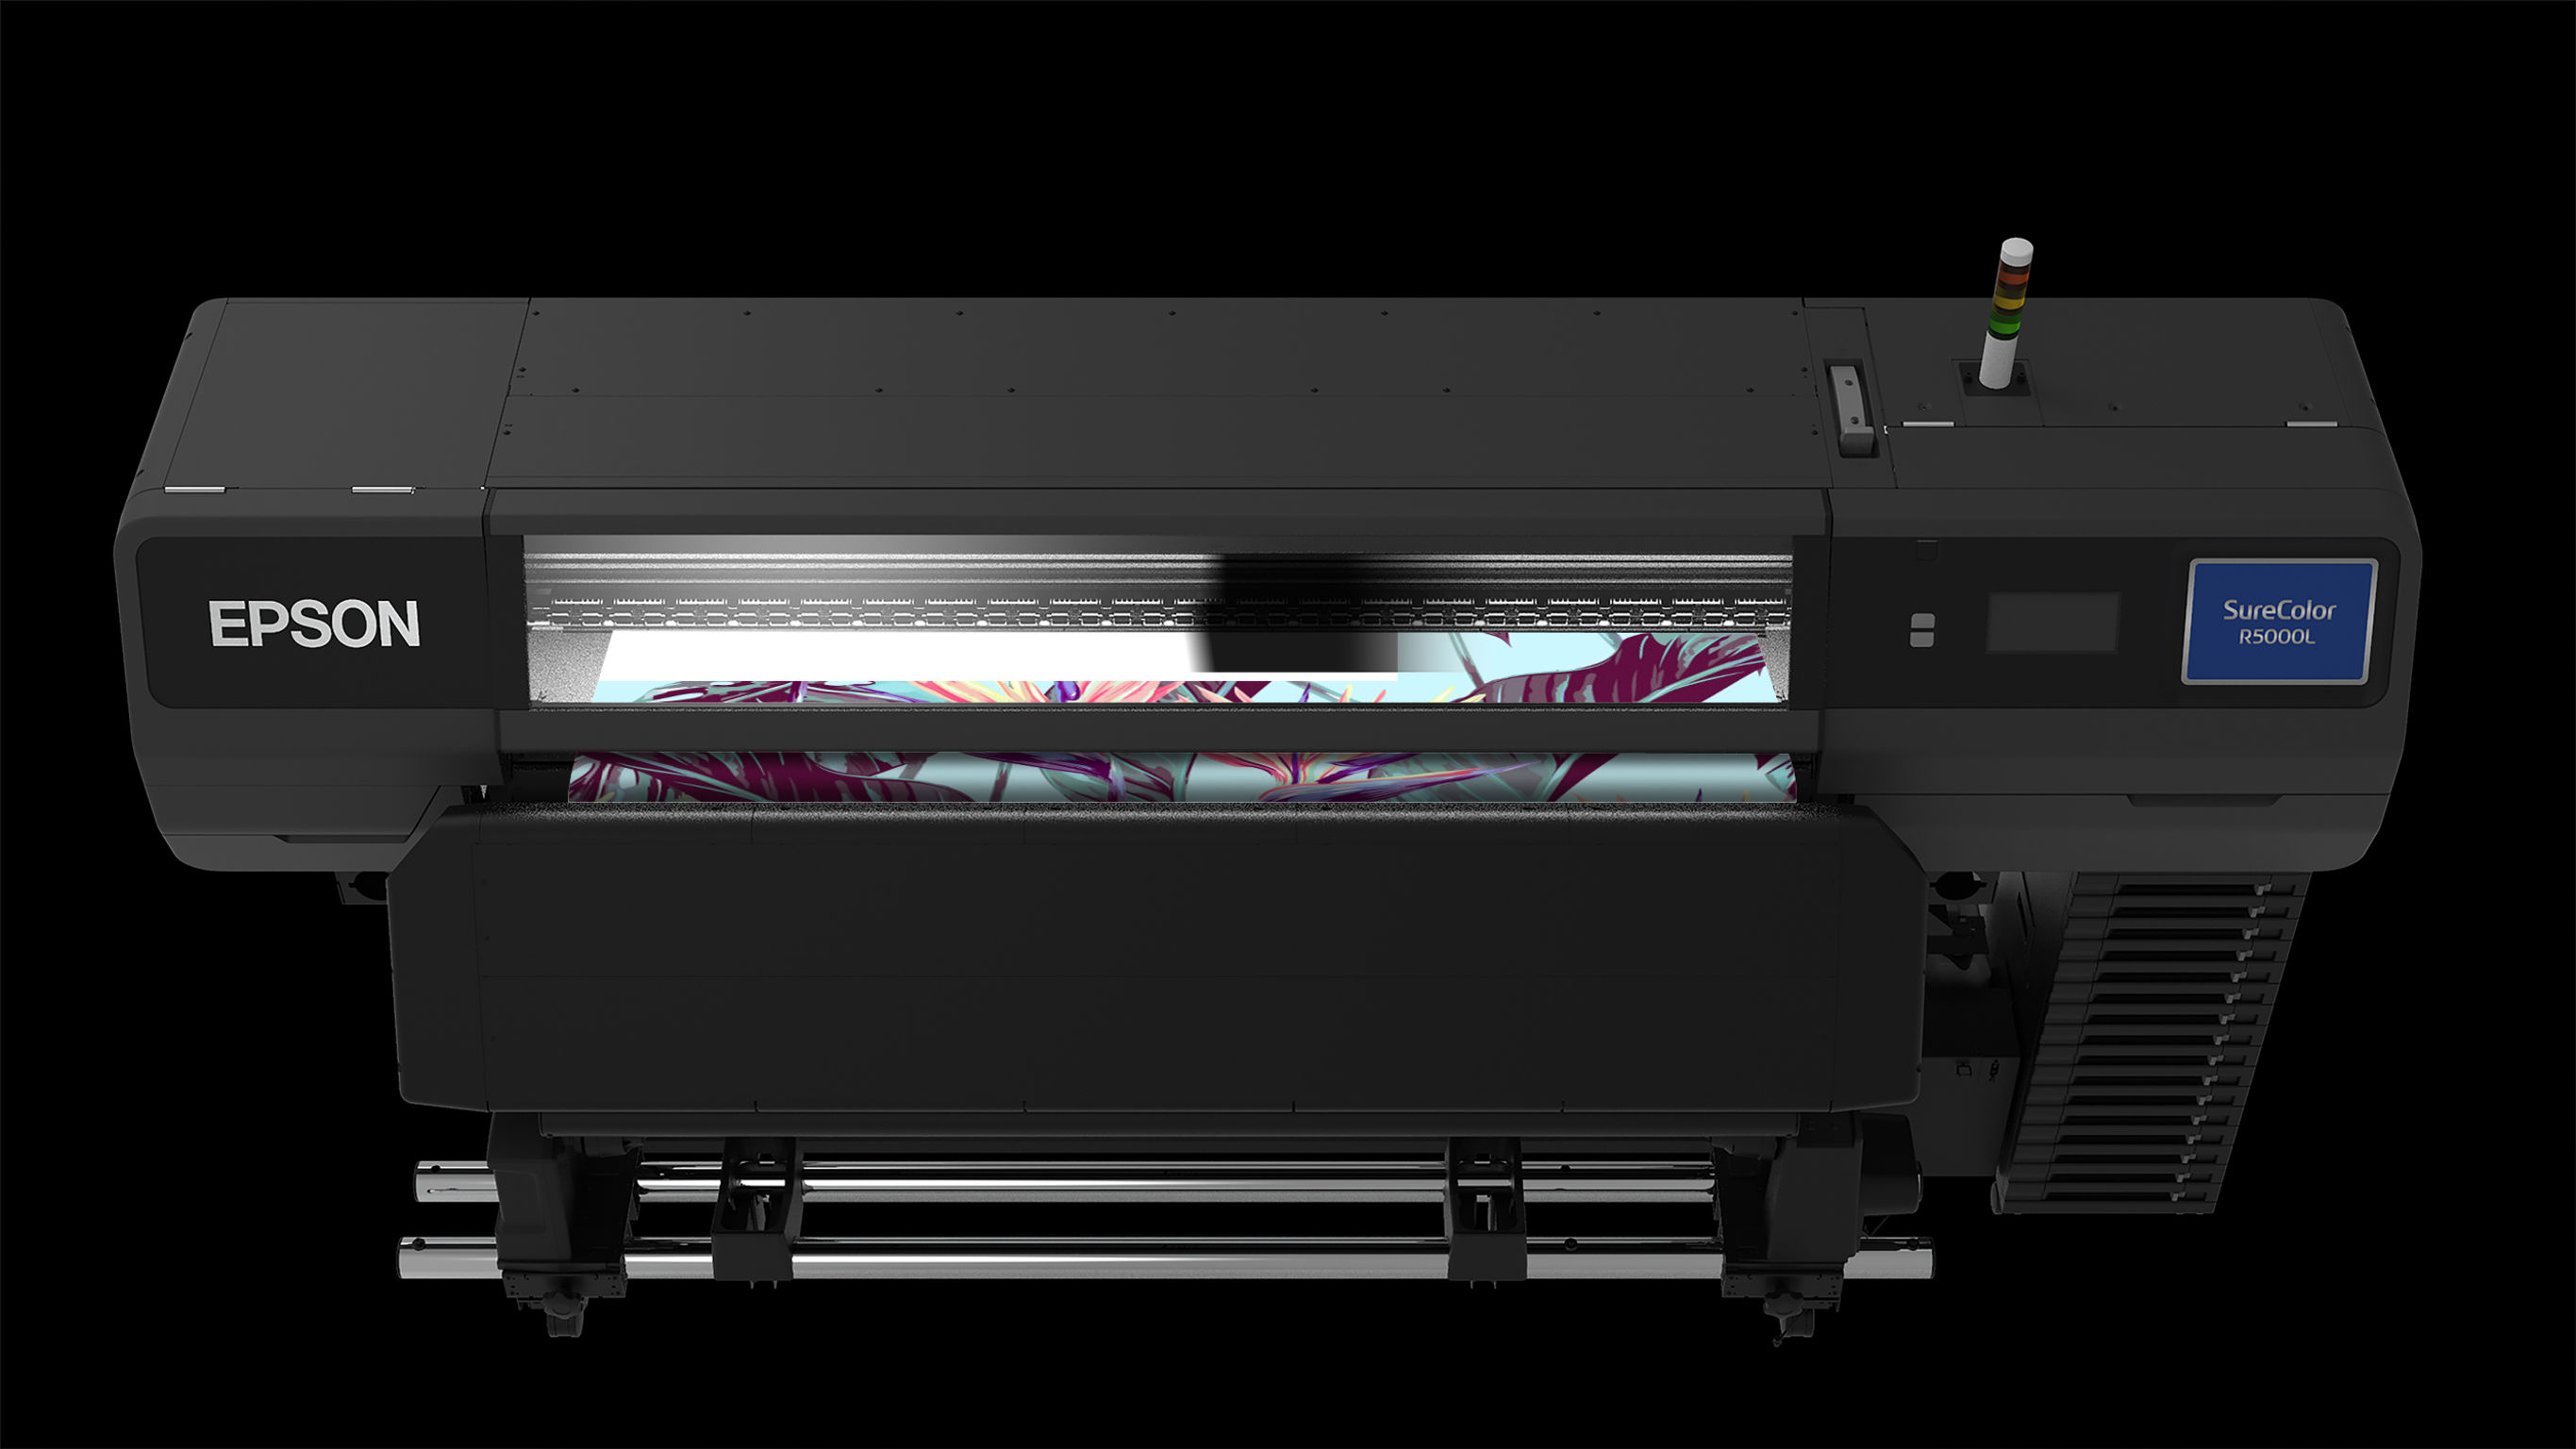 Impresora con tinta de resina Epson SureColor SC-R5000L